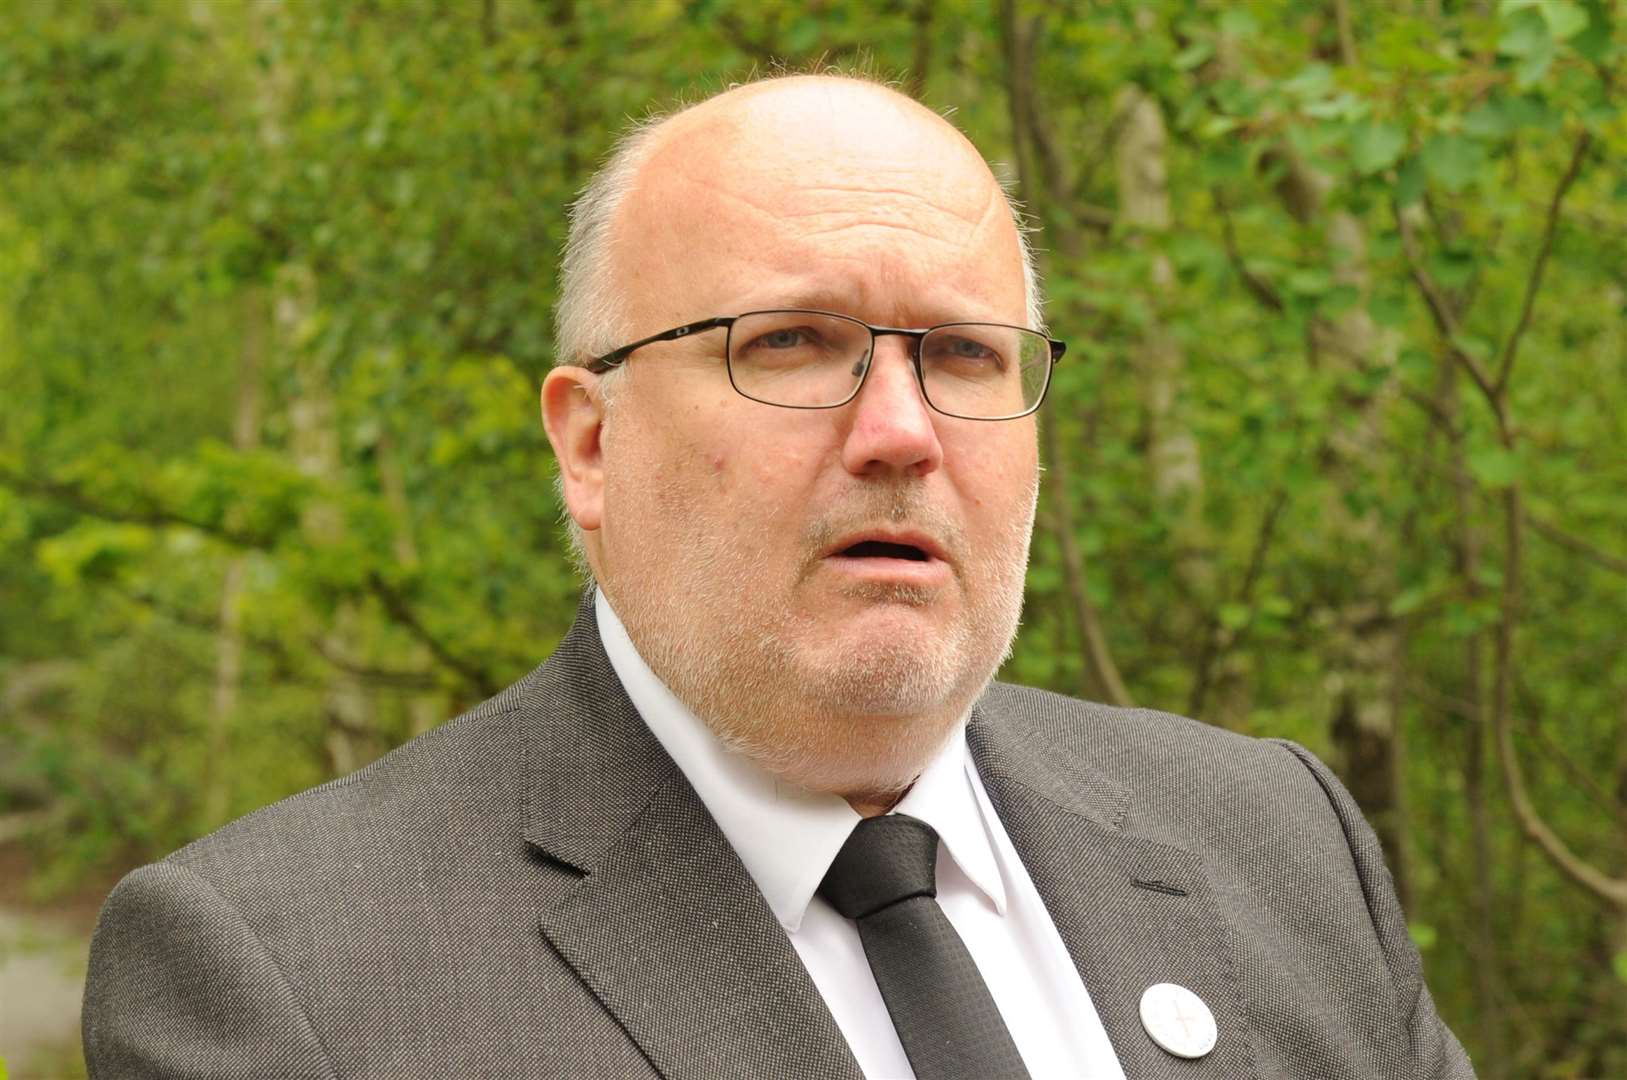 Dartford council leader Cllr Jeremy Kite